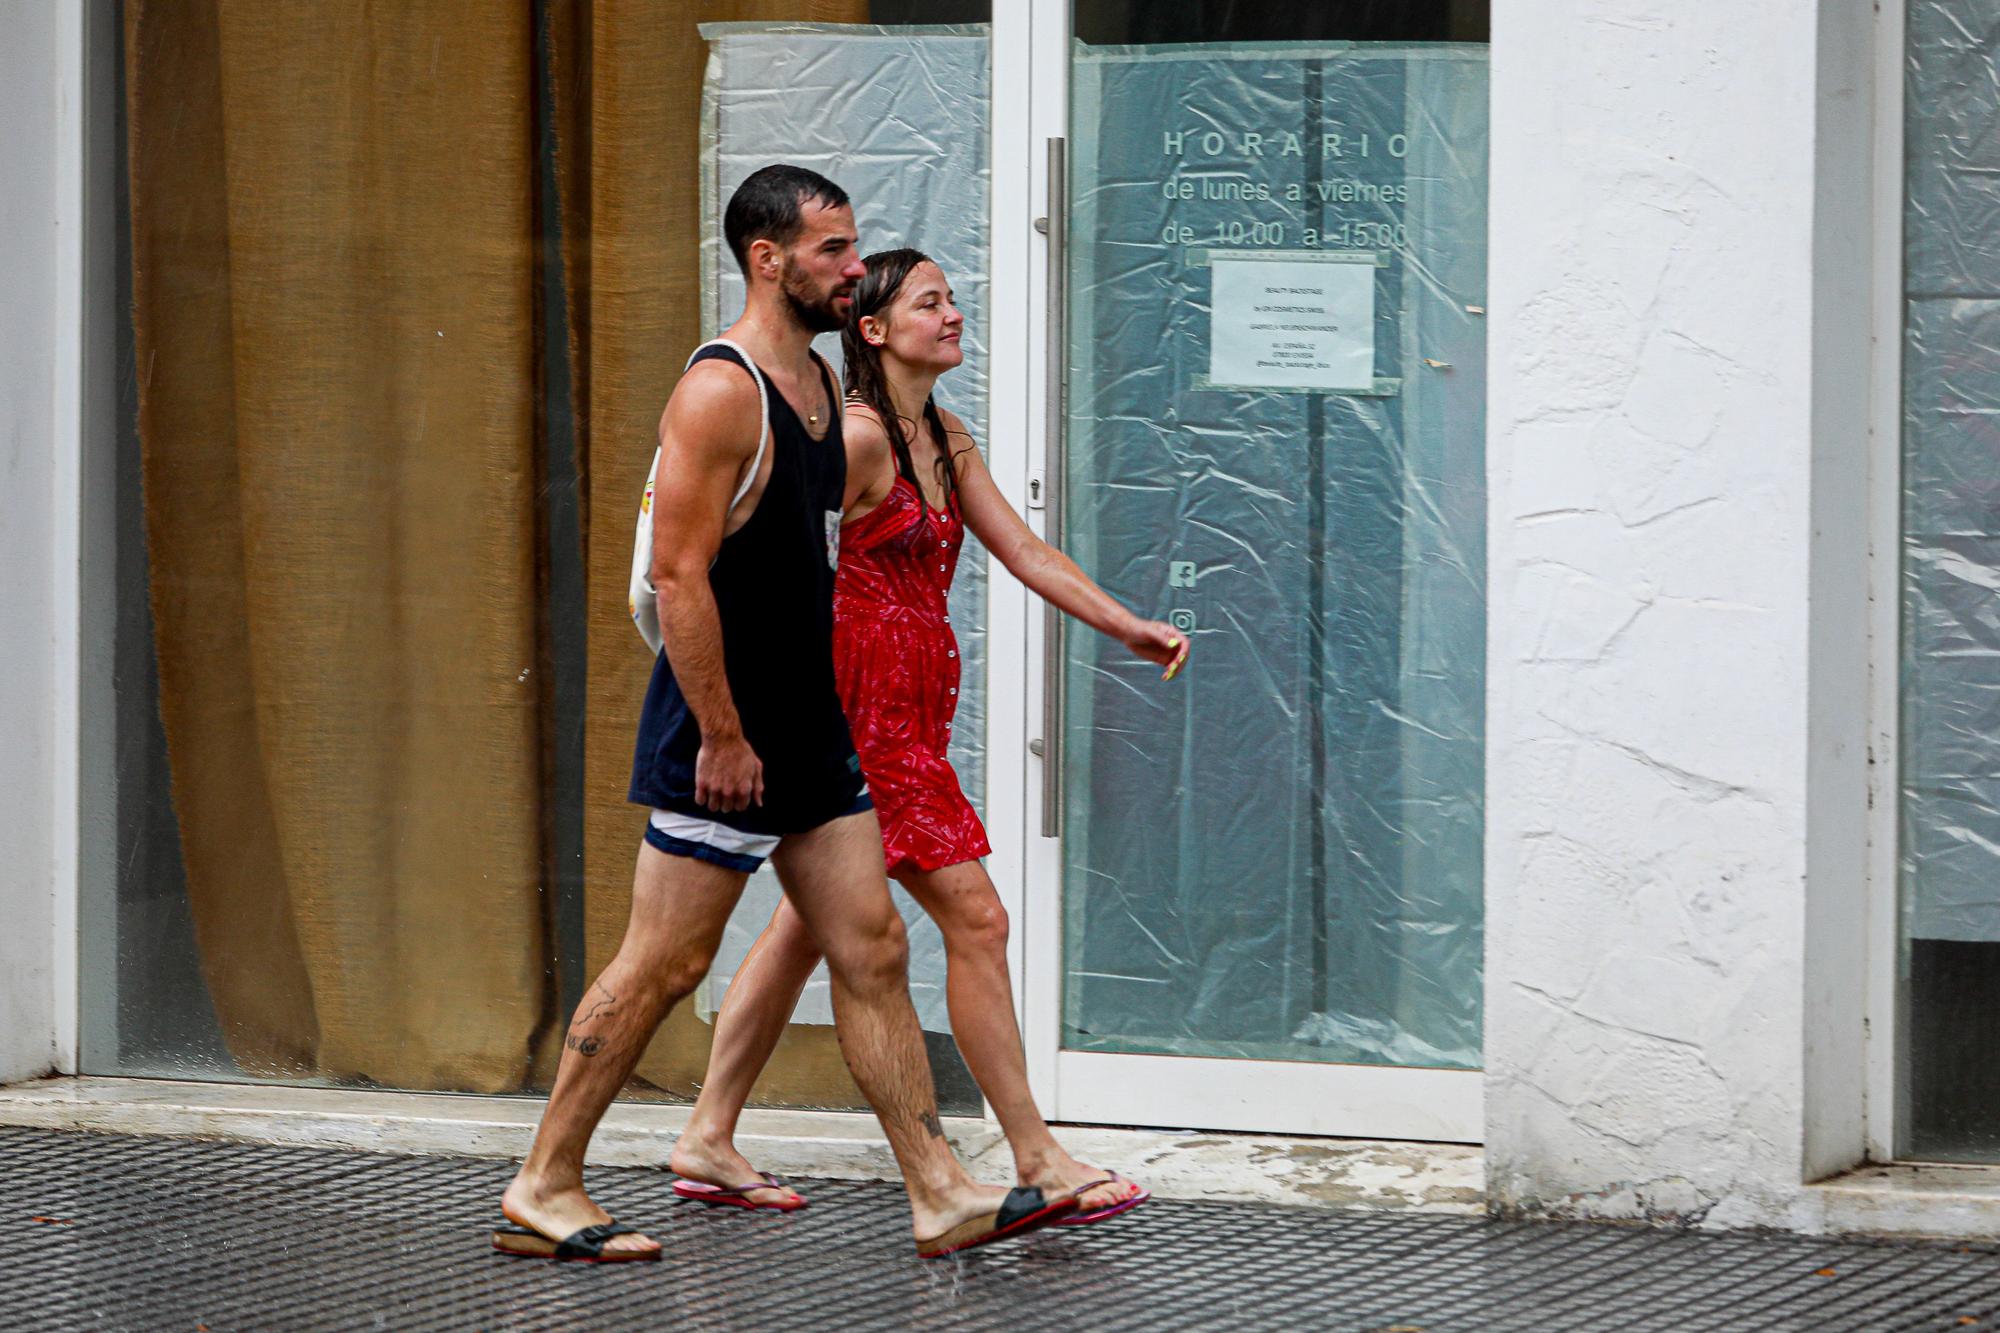 Mira aquí todas las fotos del paso de la borrasca por las calles de Ibiza